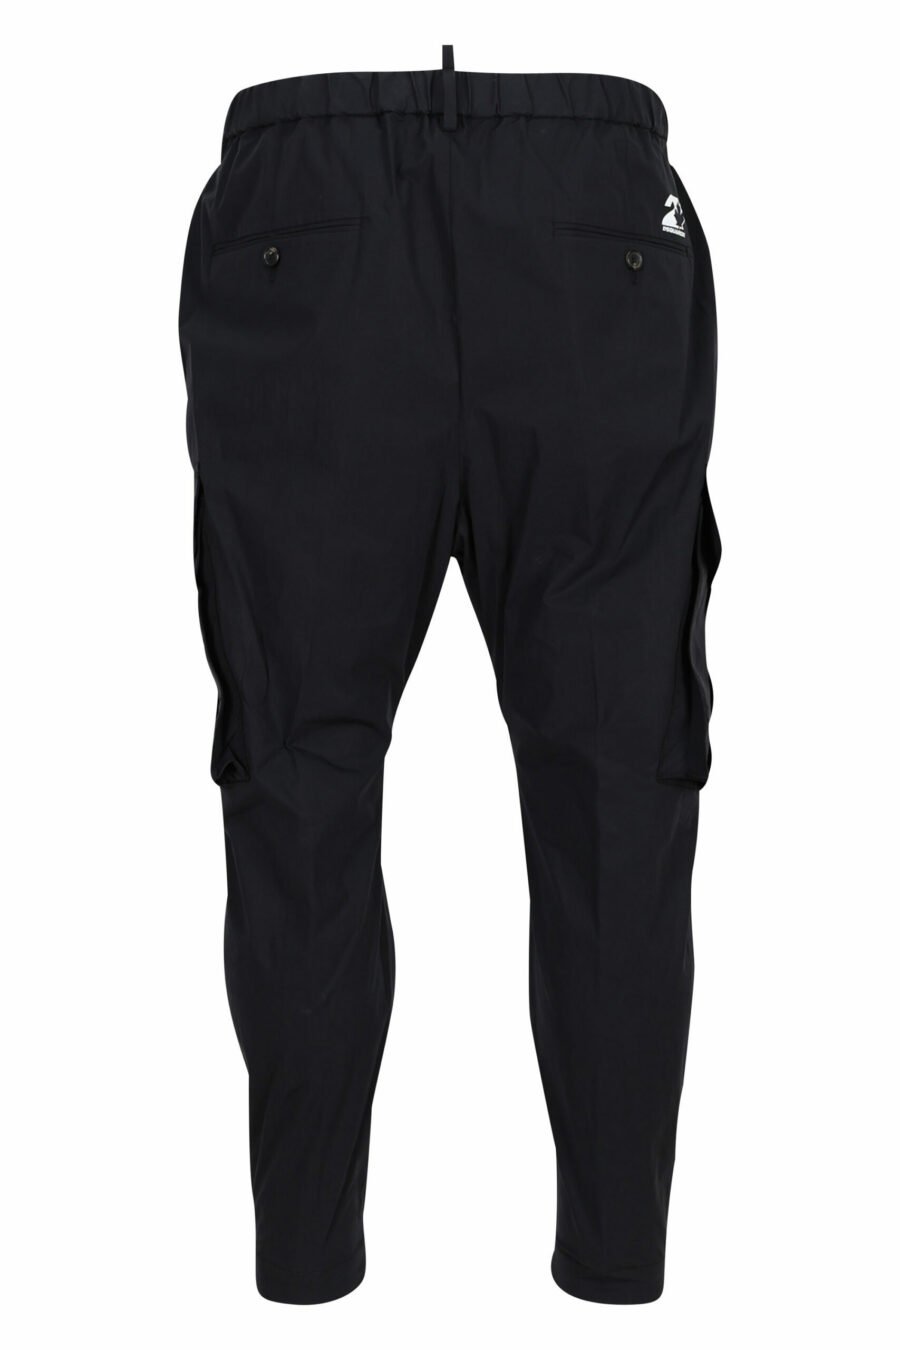 Pantalón negro " pully pant" - 8054148060992 2 scaled